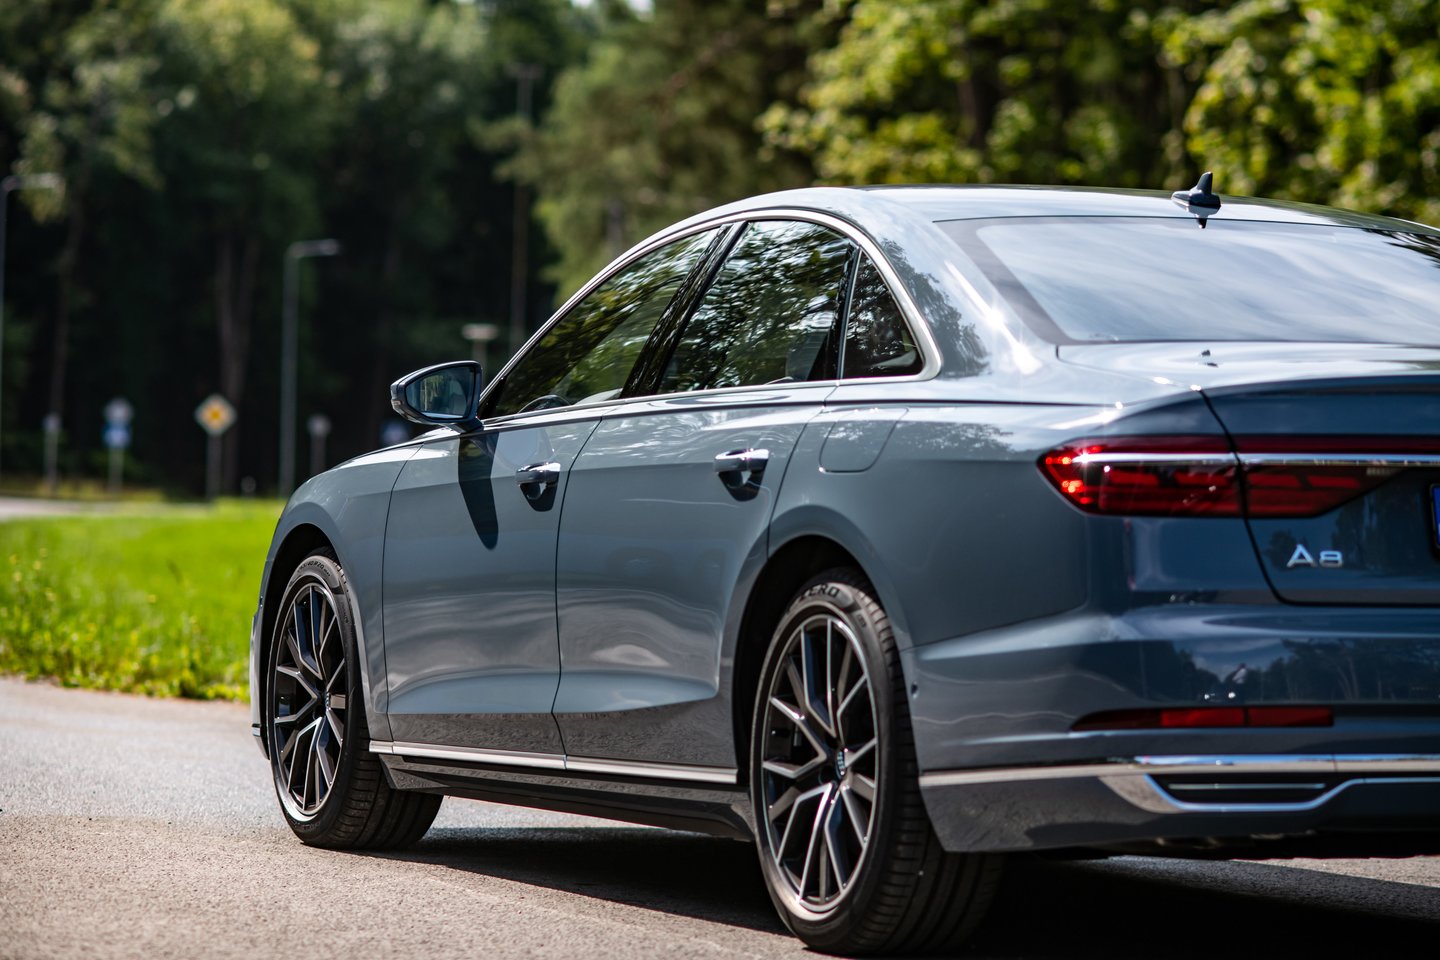 125 tūkst. eurų – tokią sumą teks pakloti už „Audi A8“ trijų litrų sedaną.<br>„Audi“ nuotr.